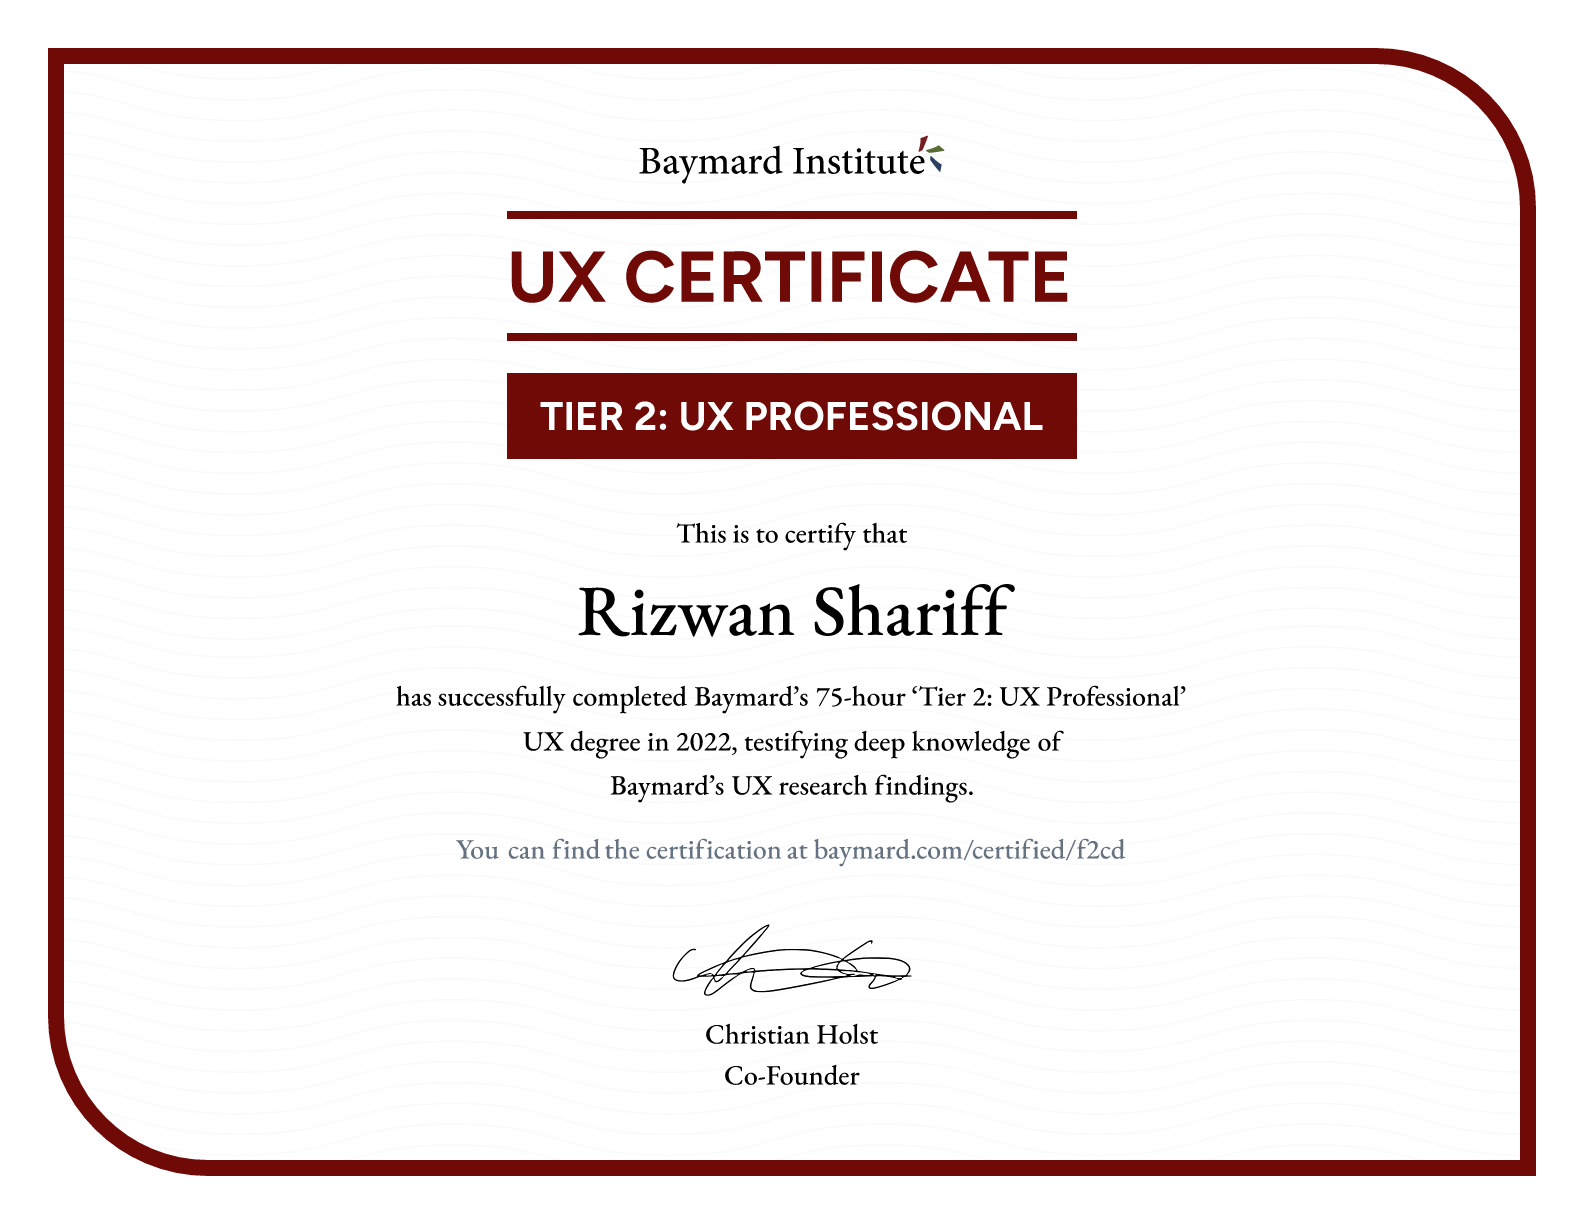 Rizwan Shariff’s certificate